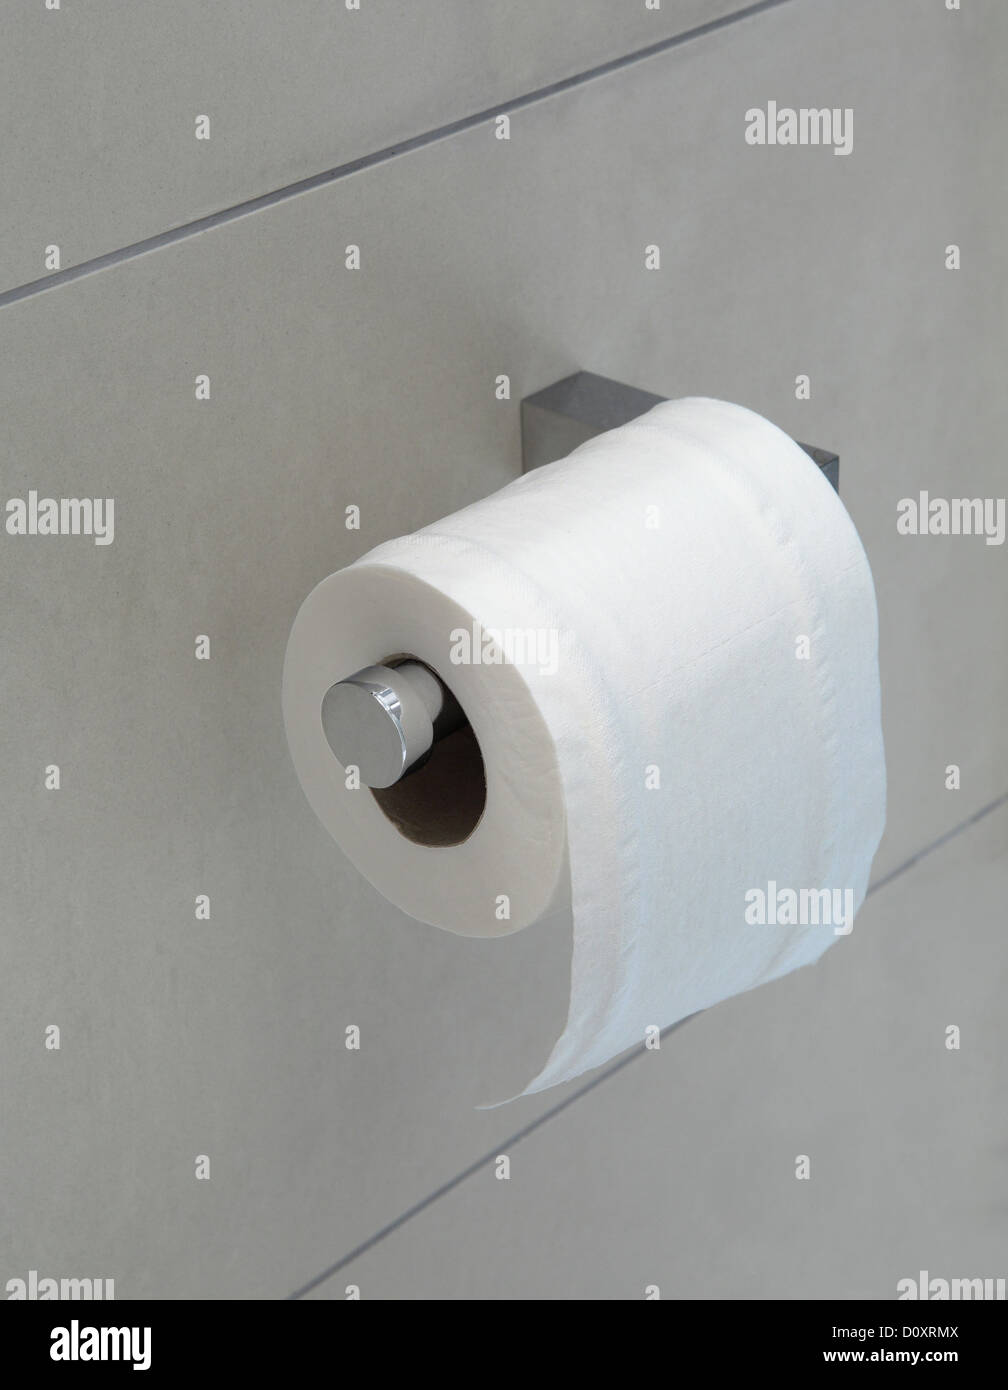 Rotolo di carta igienica sul supporto Foto Stock